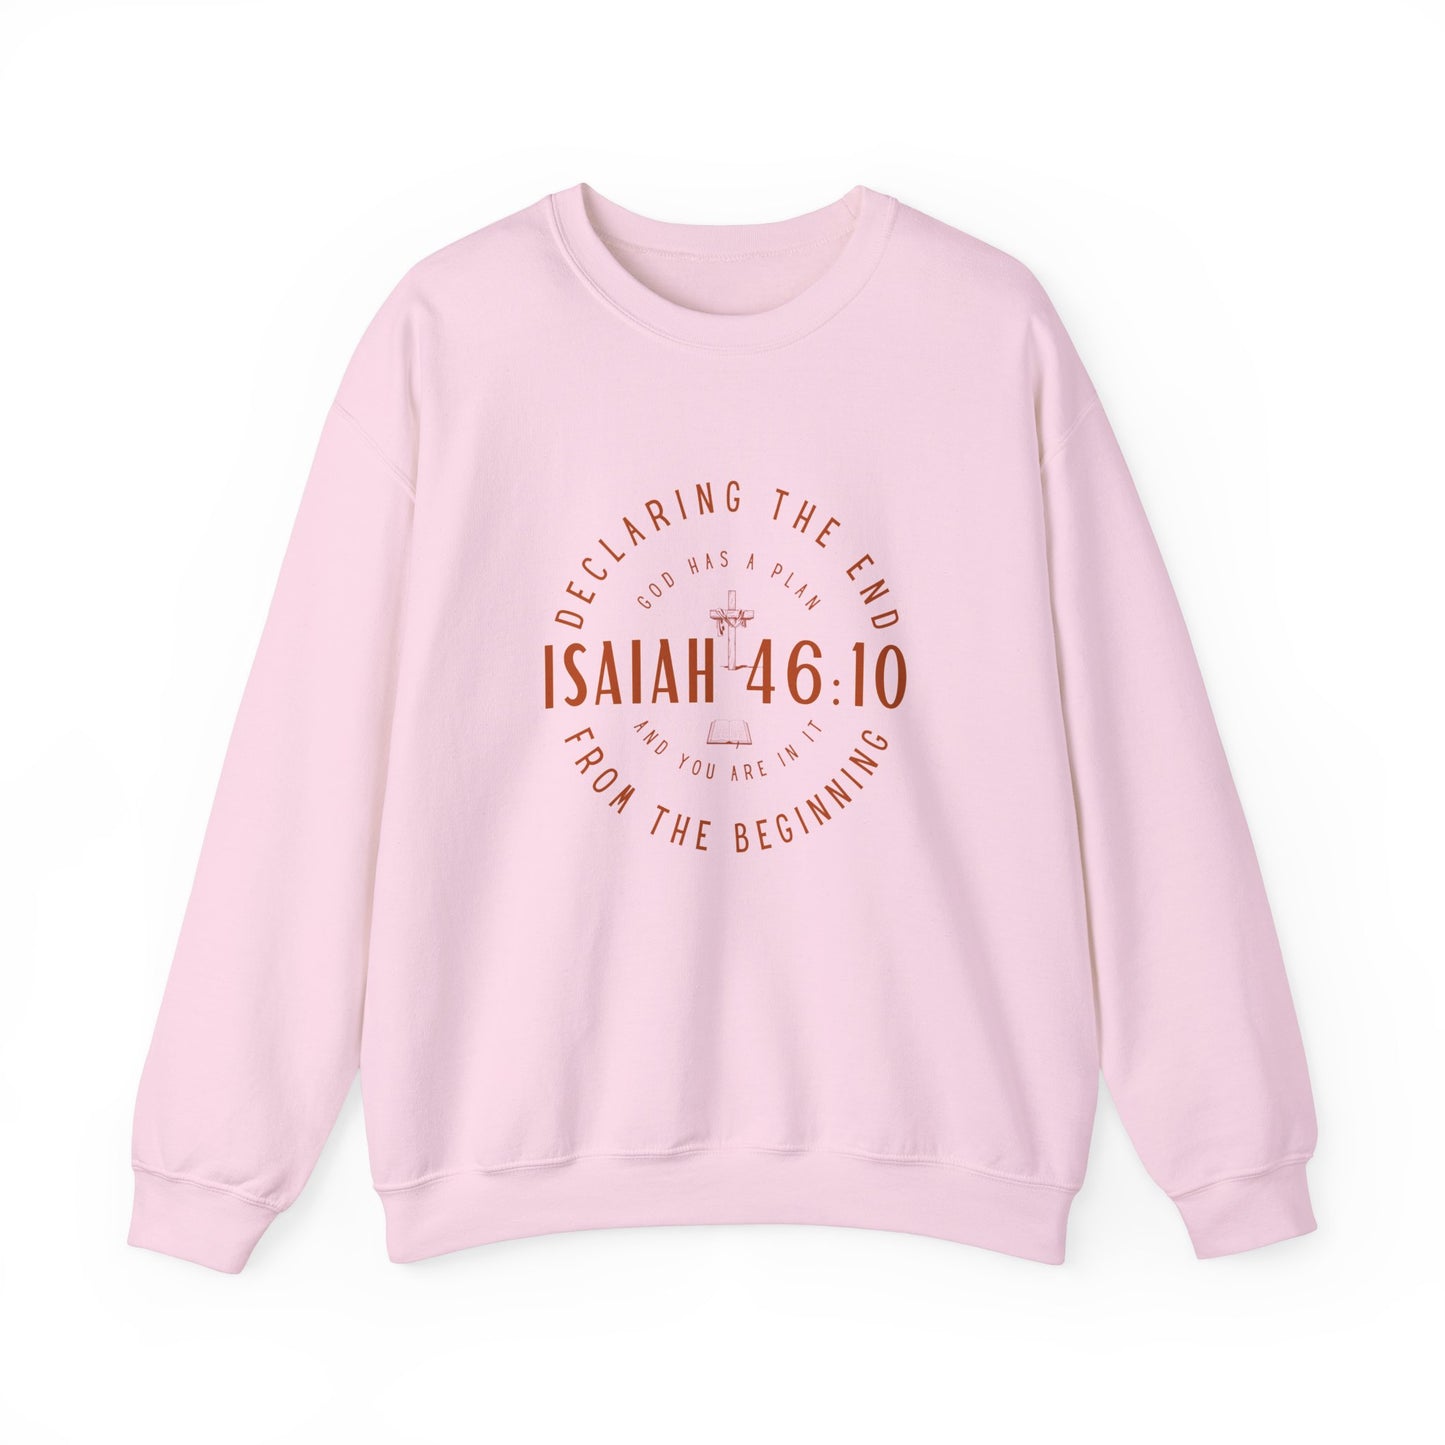 Sweatshirt, Isaiah 46.10, Gildan 18000, men and women, pink